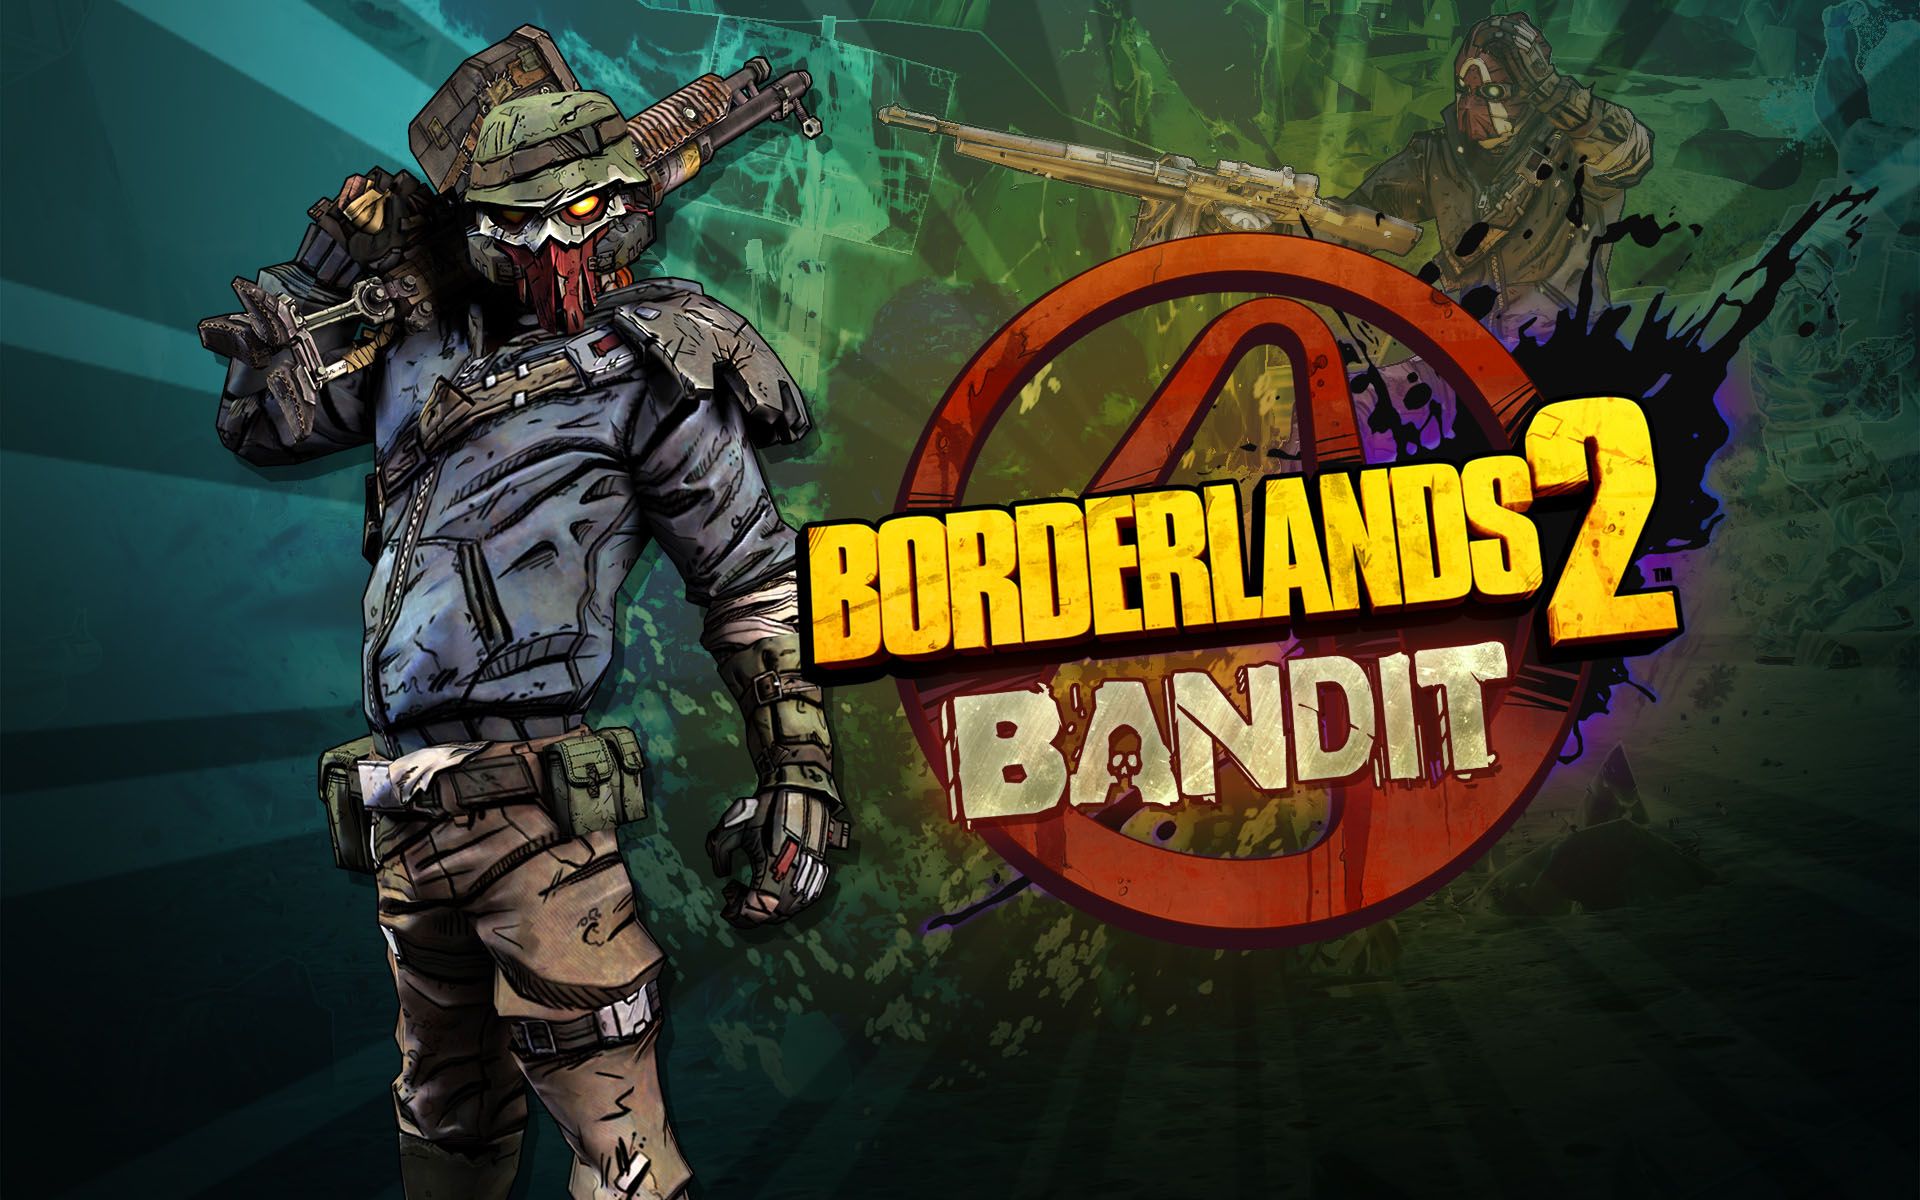 Borderlands 2 Desktop Wallpapers - Features - www.GameInformer.com